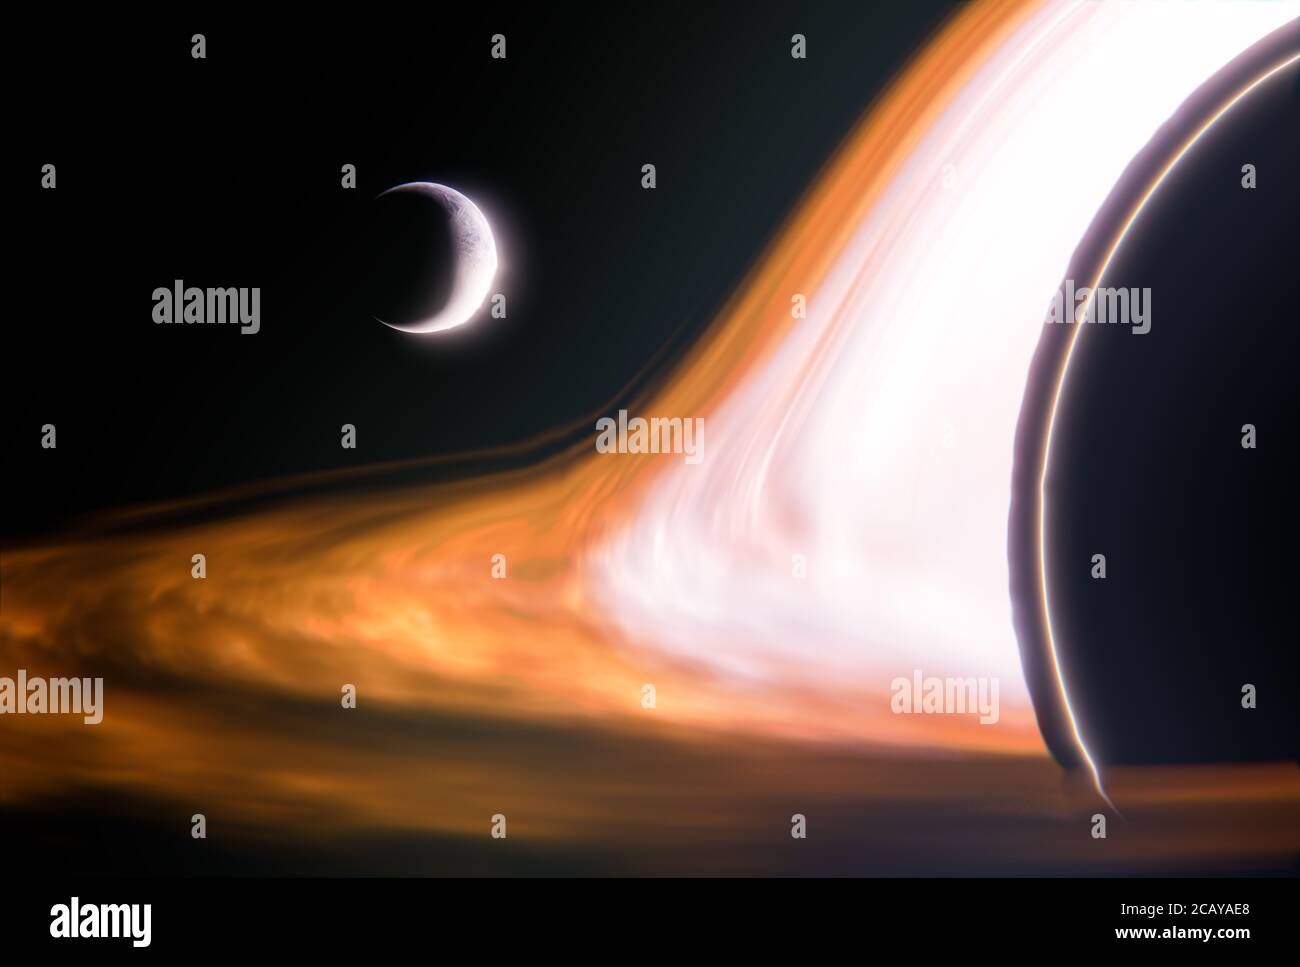 Planet wird in ein Schwarzes Loch im Weltraum gezogen - Nahaufnahme - 3D-Illustration Stockfoto